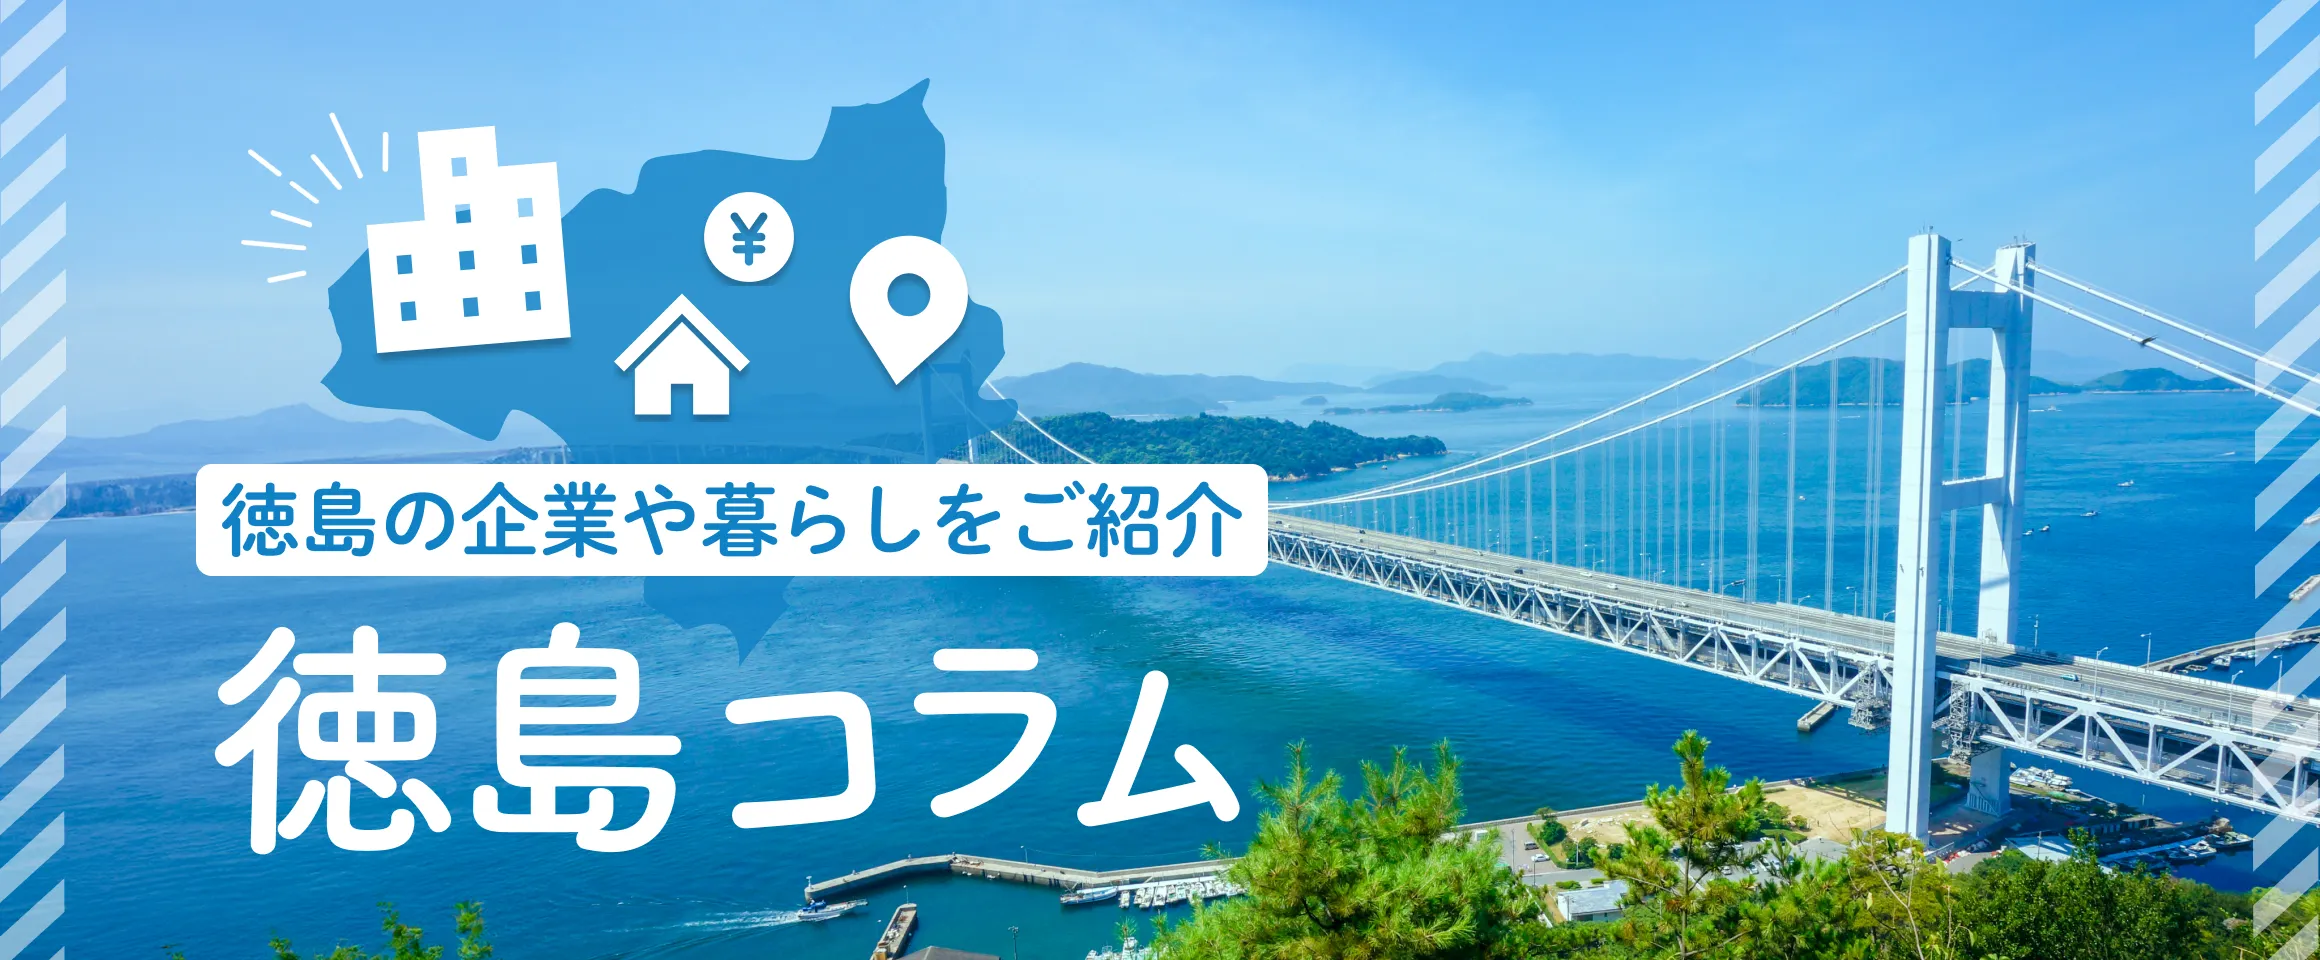 徳島の企業や暮らしをご紹介
徳島コラム